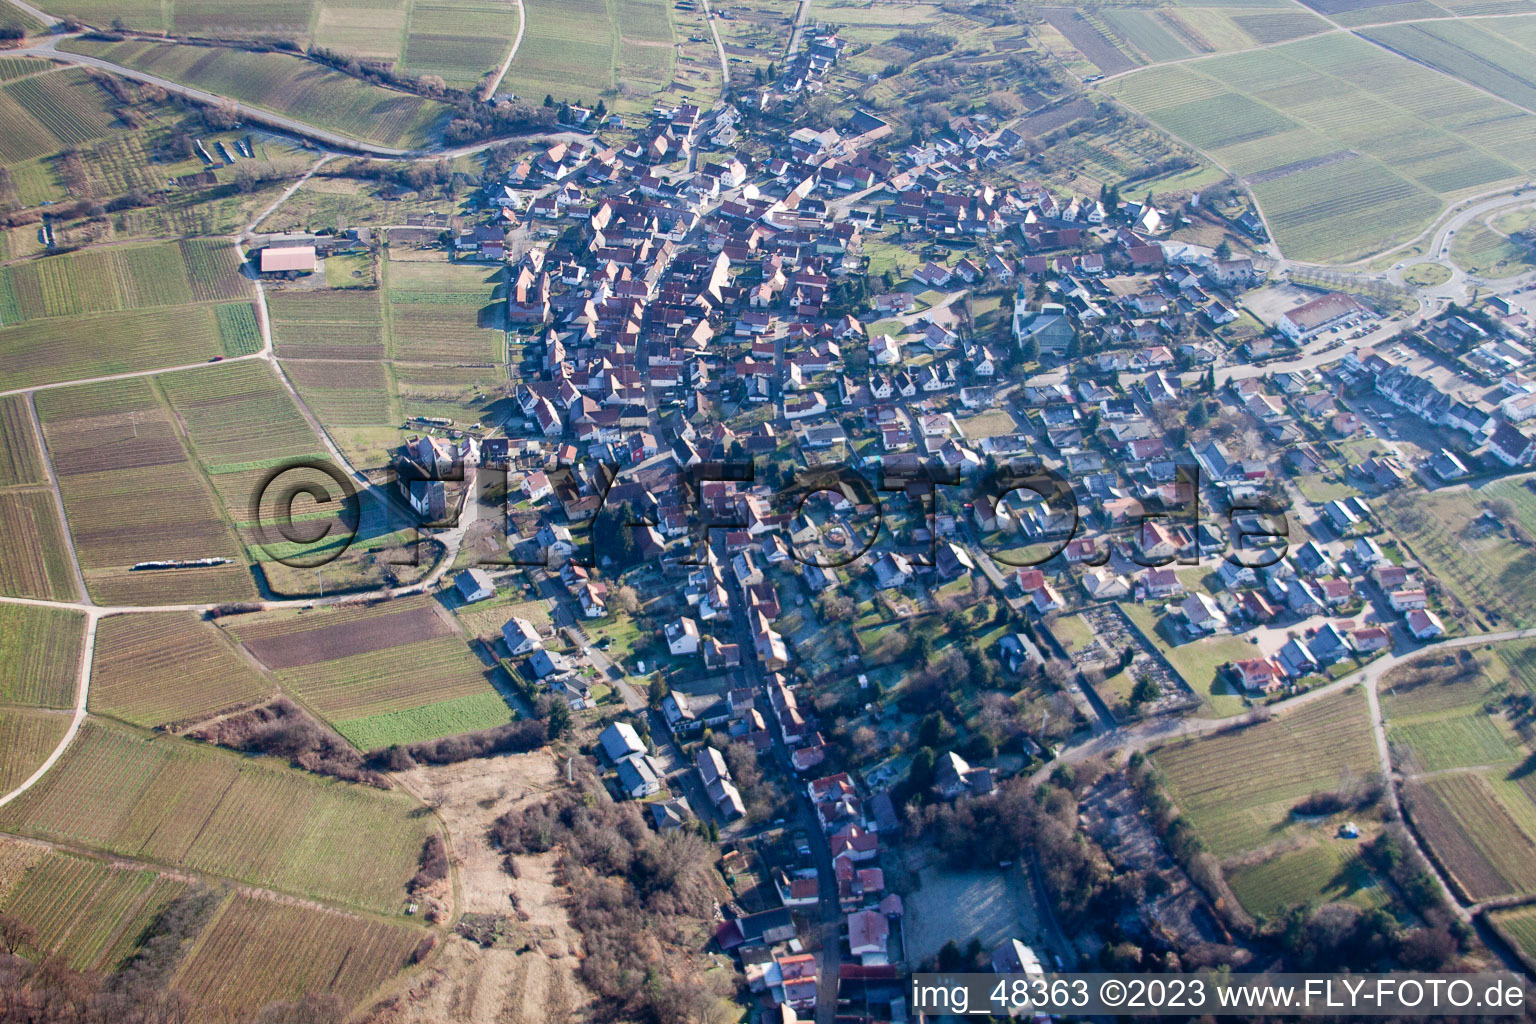 Bird's eye view of District Rechtenbach in Schweigen-Rechtenbach in the state Rhineland-Palatinate, Germany